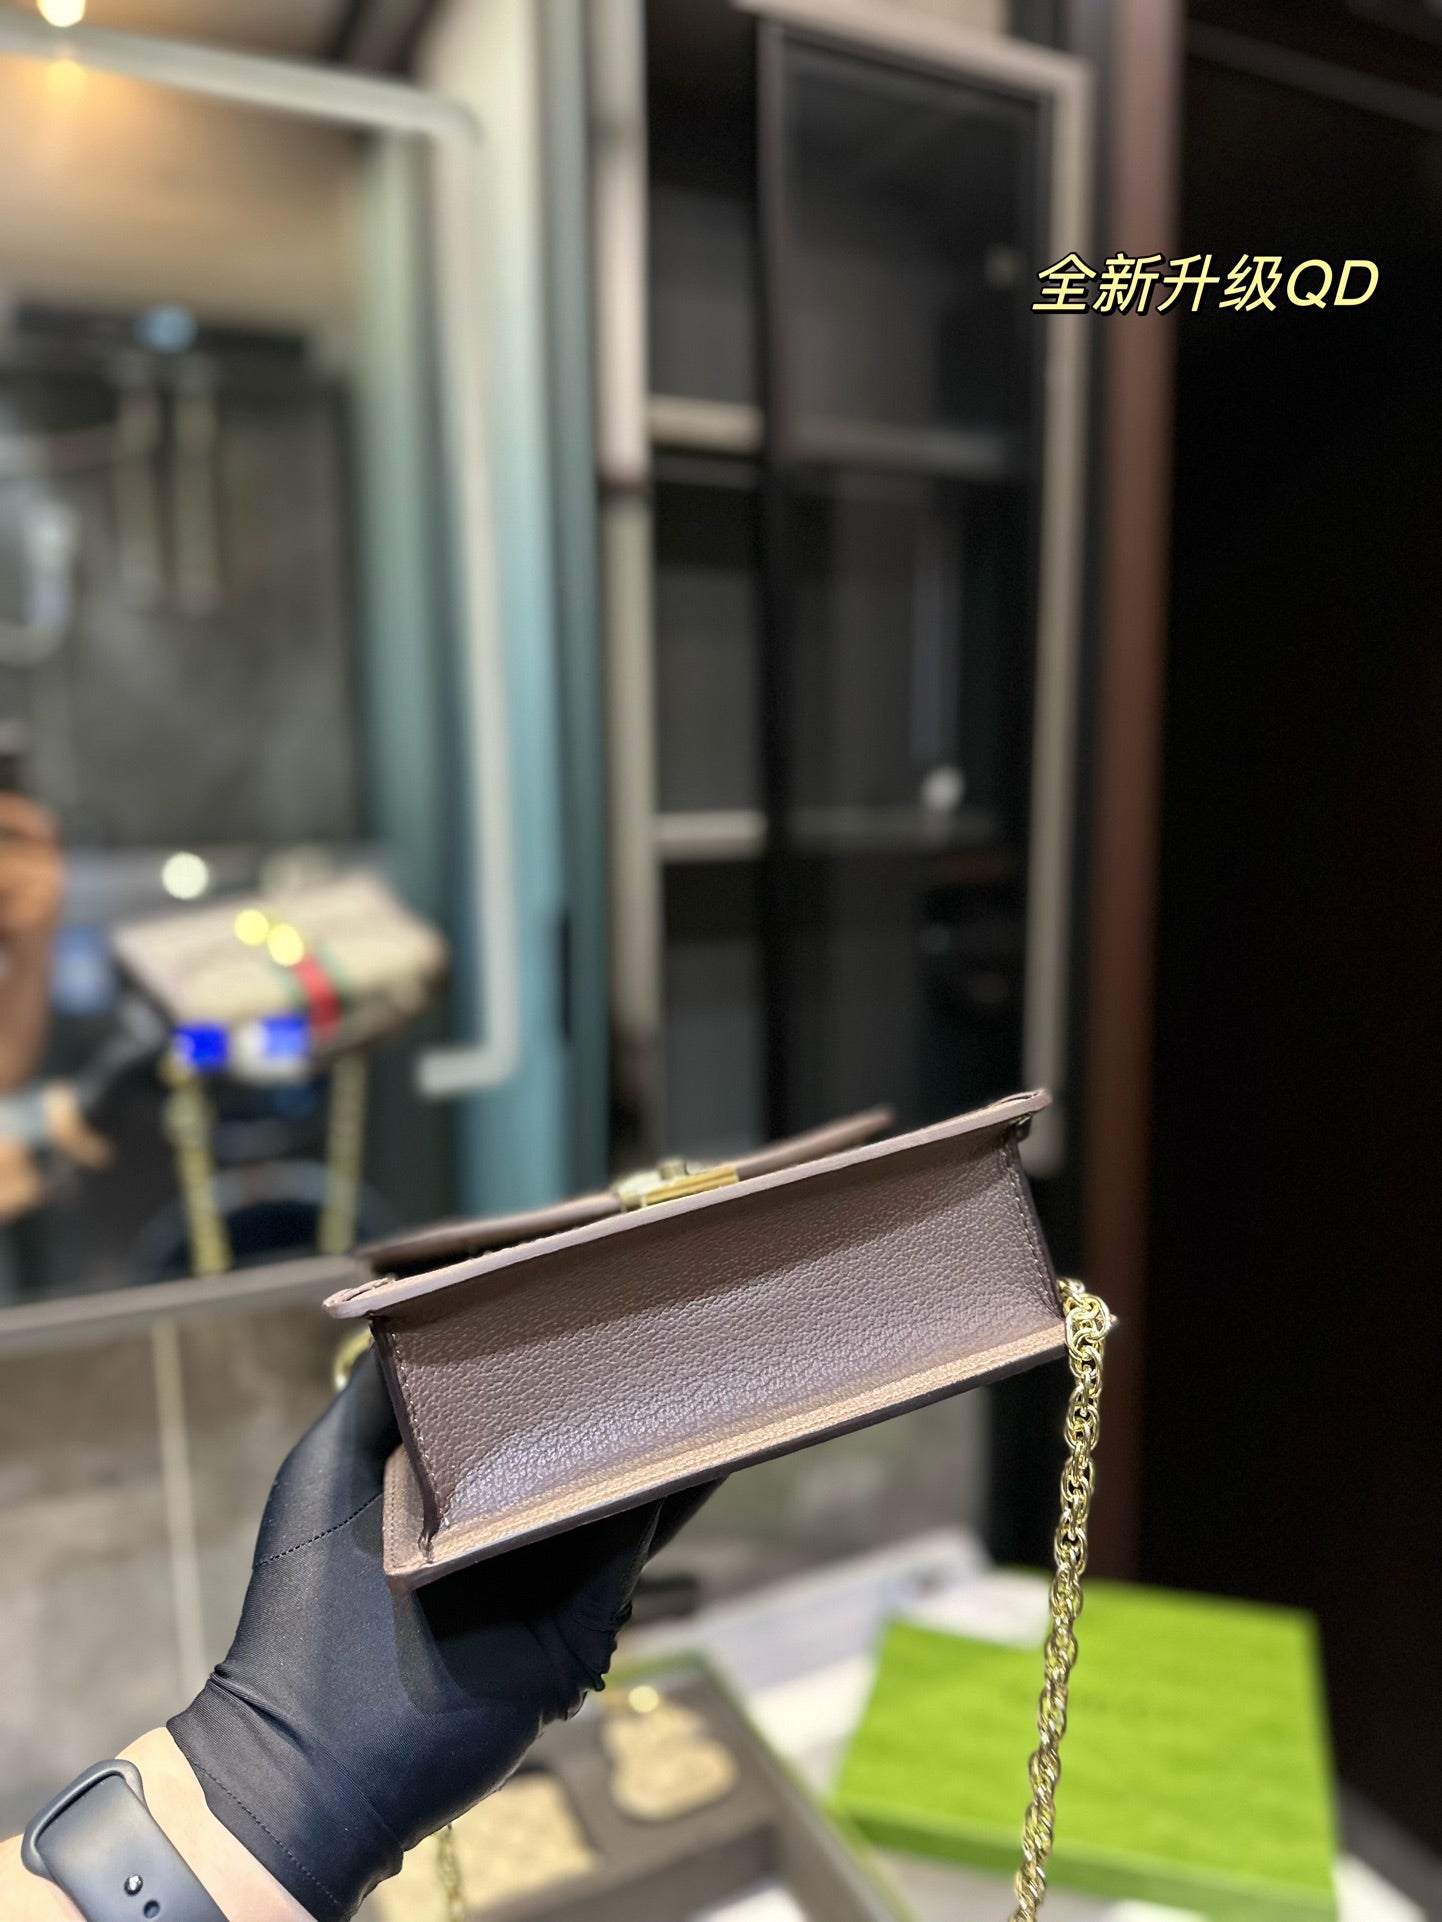 Gucci Handbag + wallet + key holder